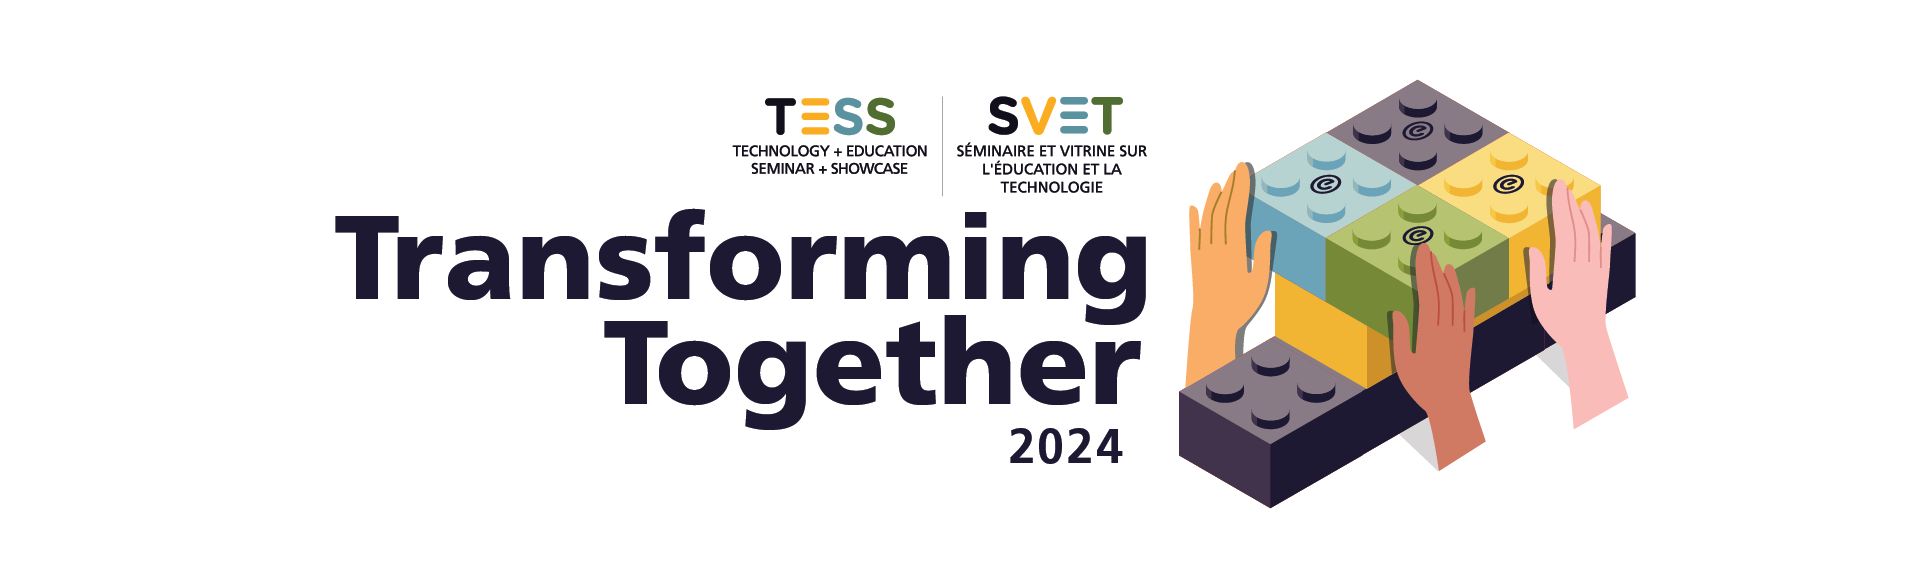 TESS SVET Transforming Together 2024 Logo. Image of lego blocks with diverse hands building together.